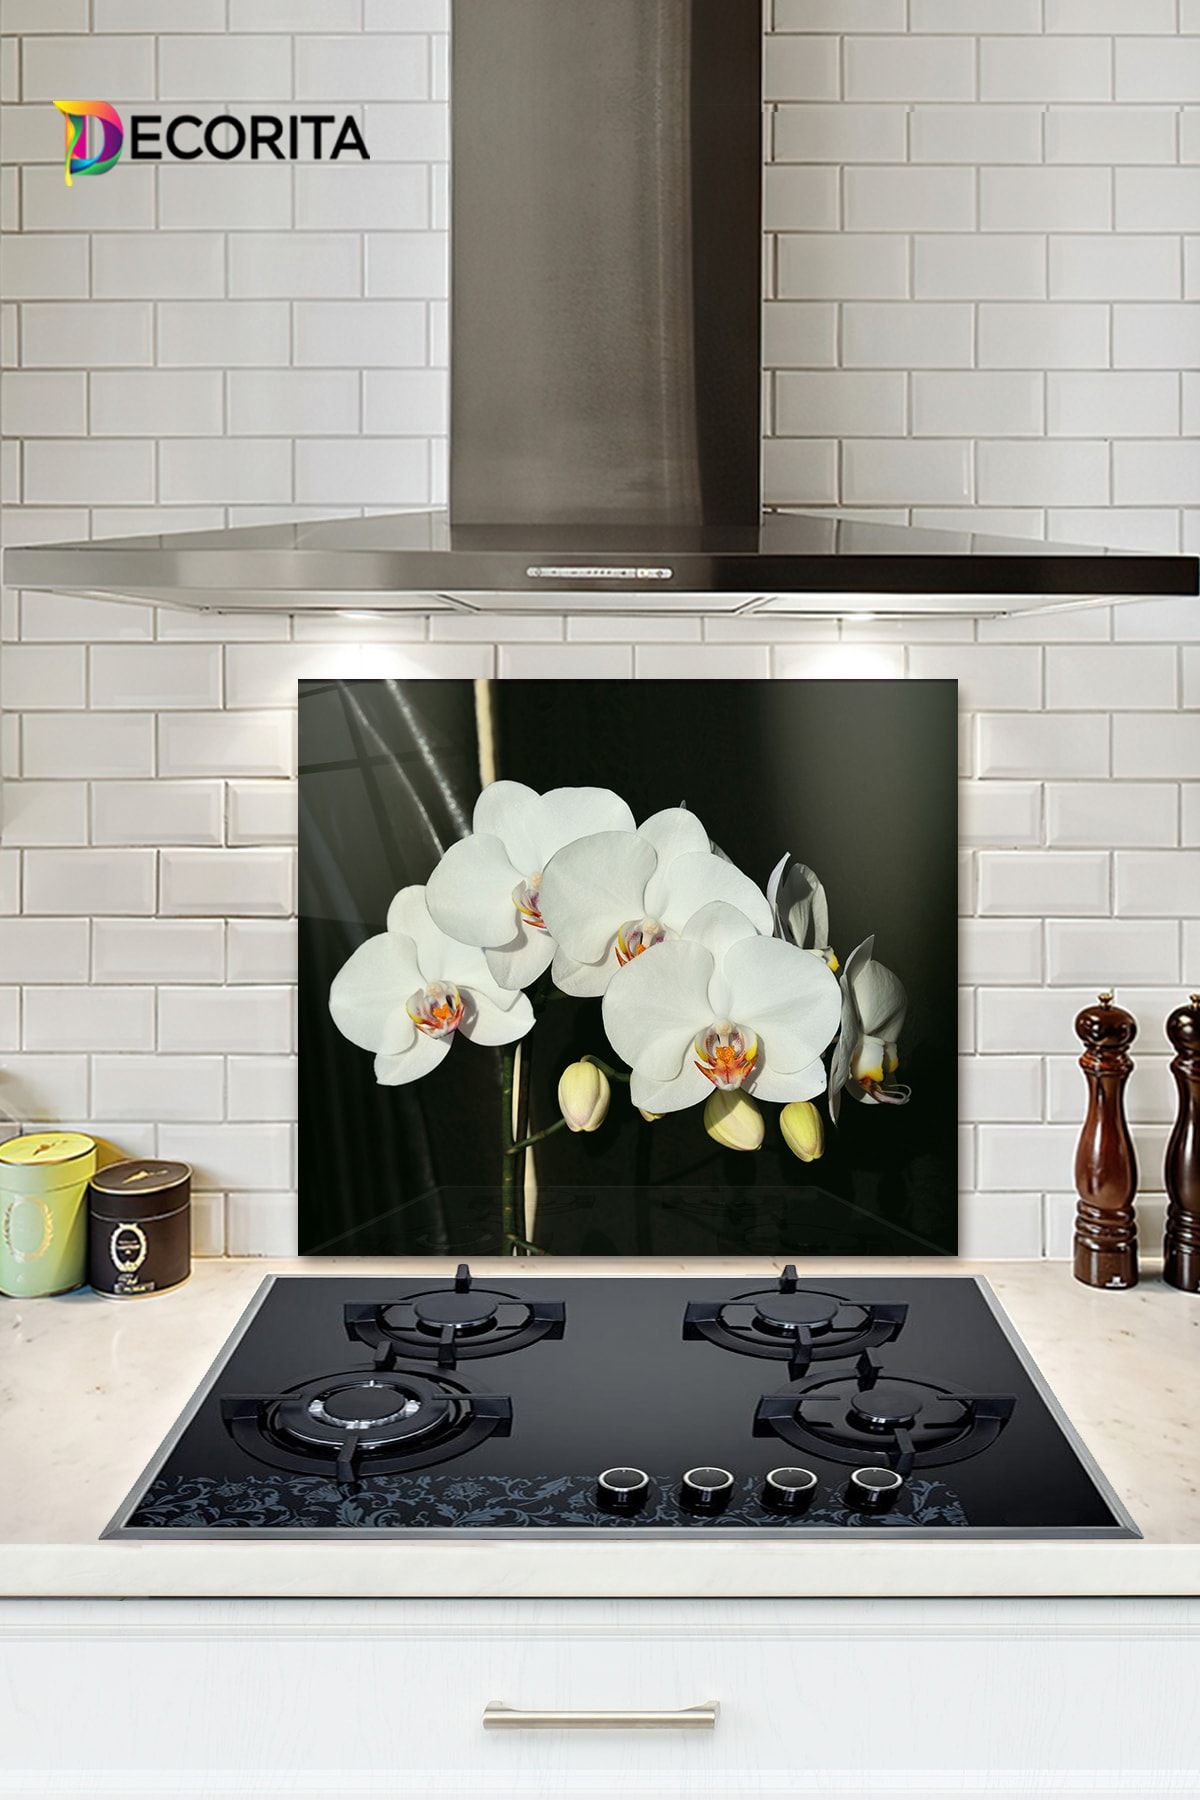 Decorita Cam Ocak Arkası Koruyucu | Orkideli Mutfak | 52cm X 60cm